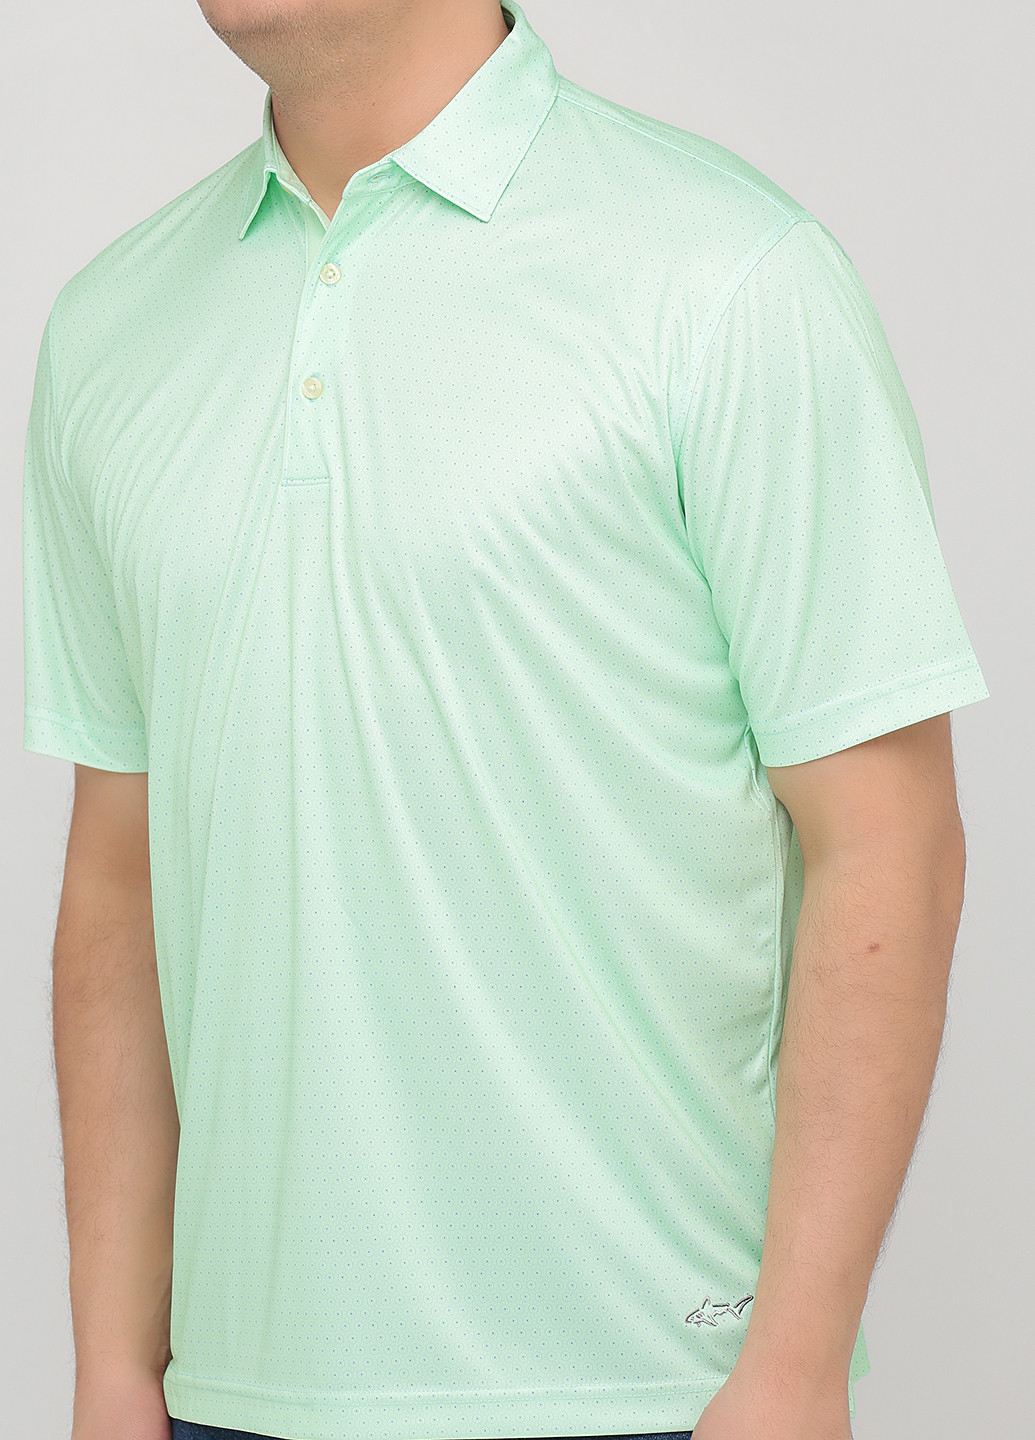 Салатовая футболка-поло для мужчин Greg Norman в горошек